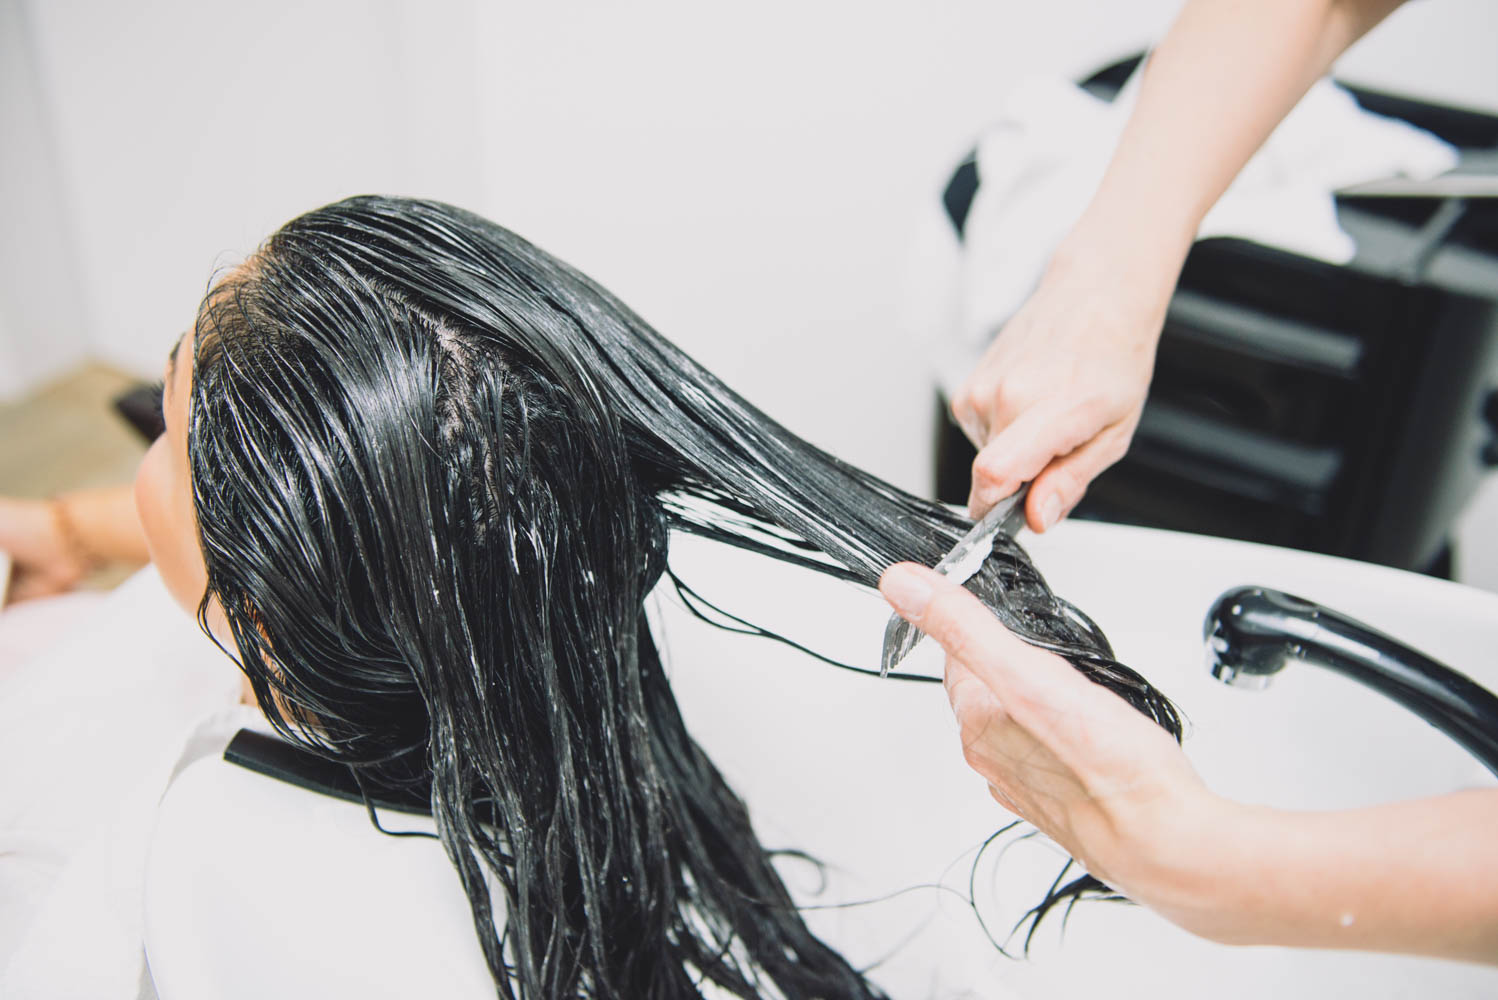 Какие салонные процедуры для волос самые эффективные против ломкости